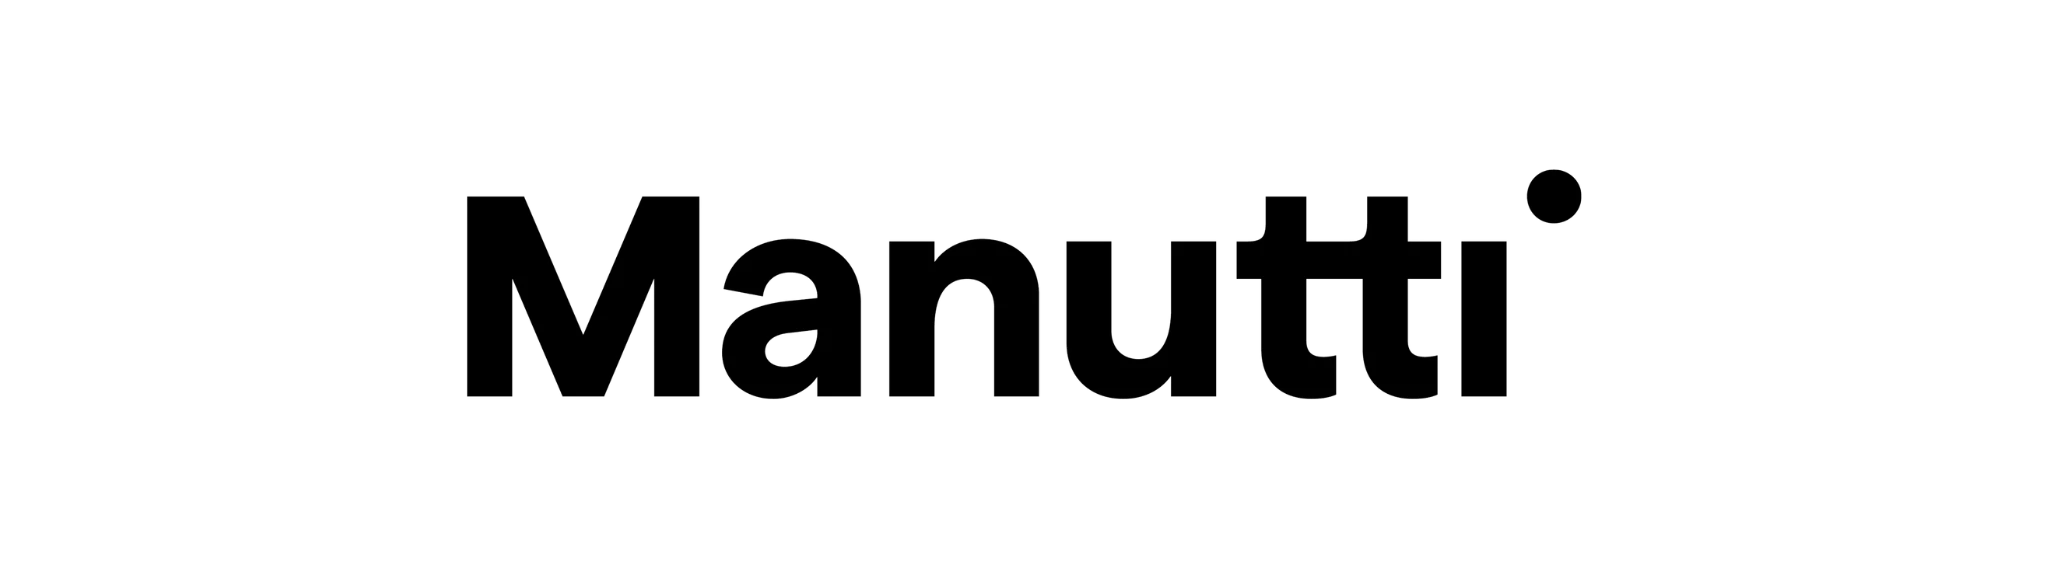 Manutti logo